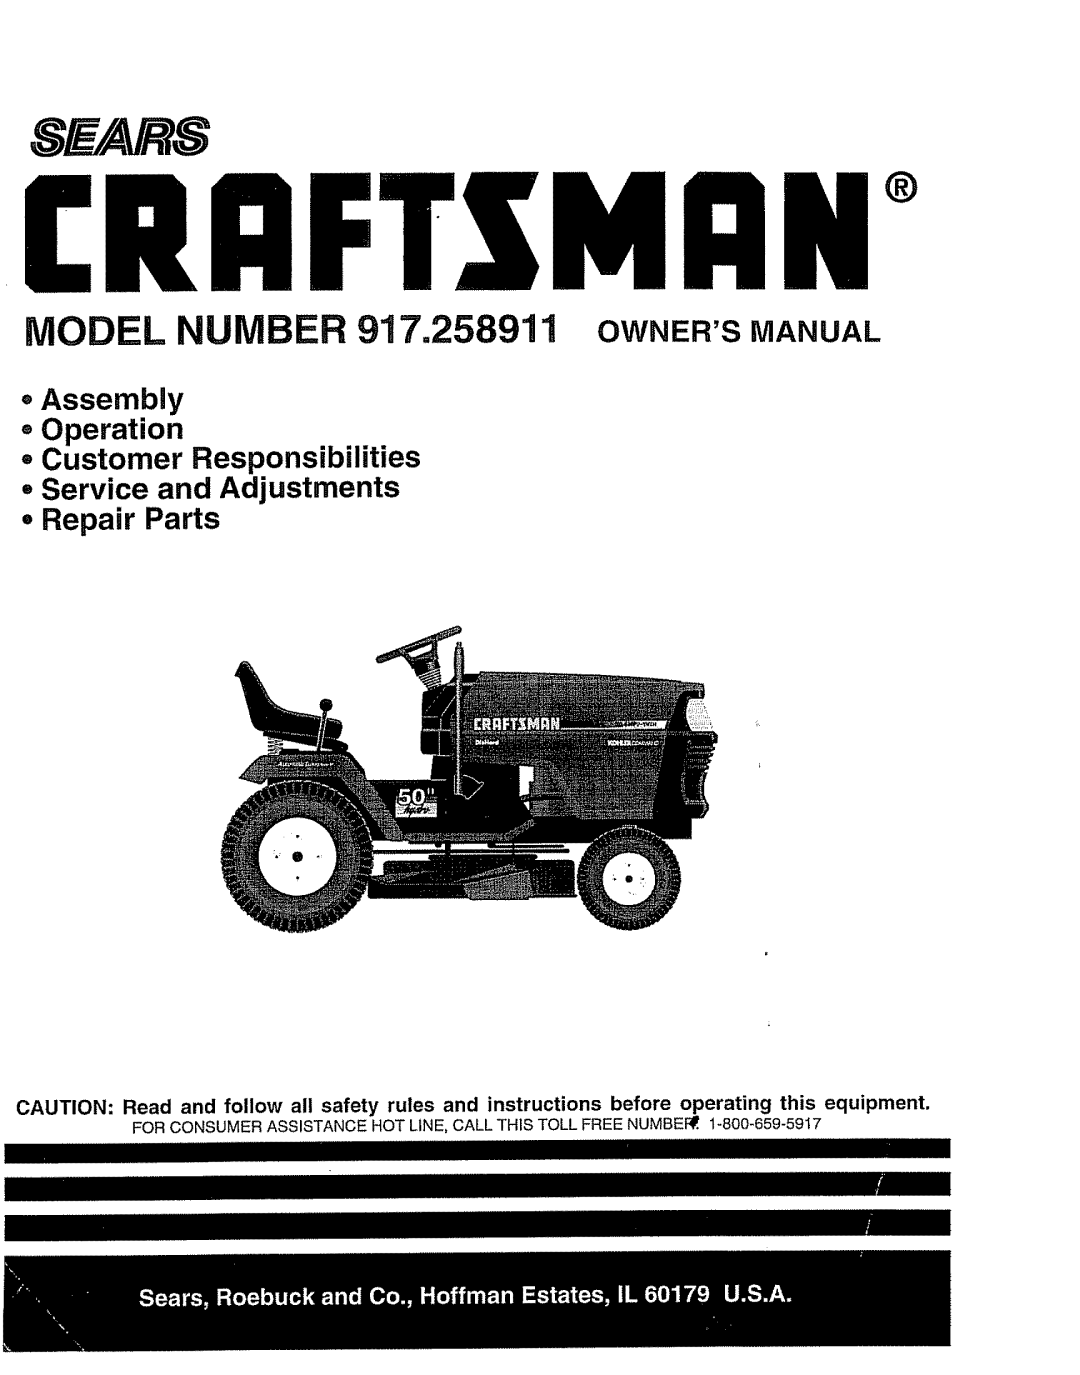 Craftsman owner manual MODEL NUMBER 917.258911 OWNERS MANUAL, oAssembly Operation, iltltlllll, tttttttttttt 